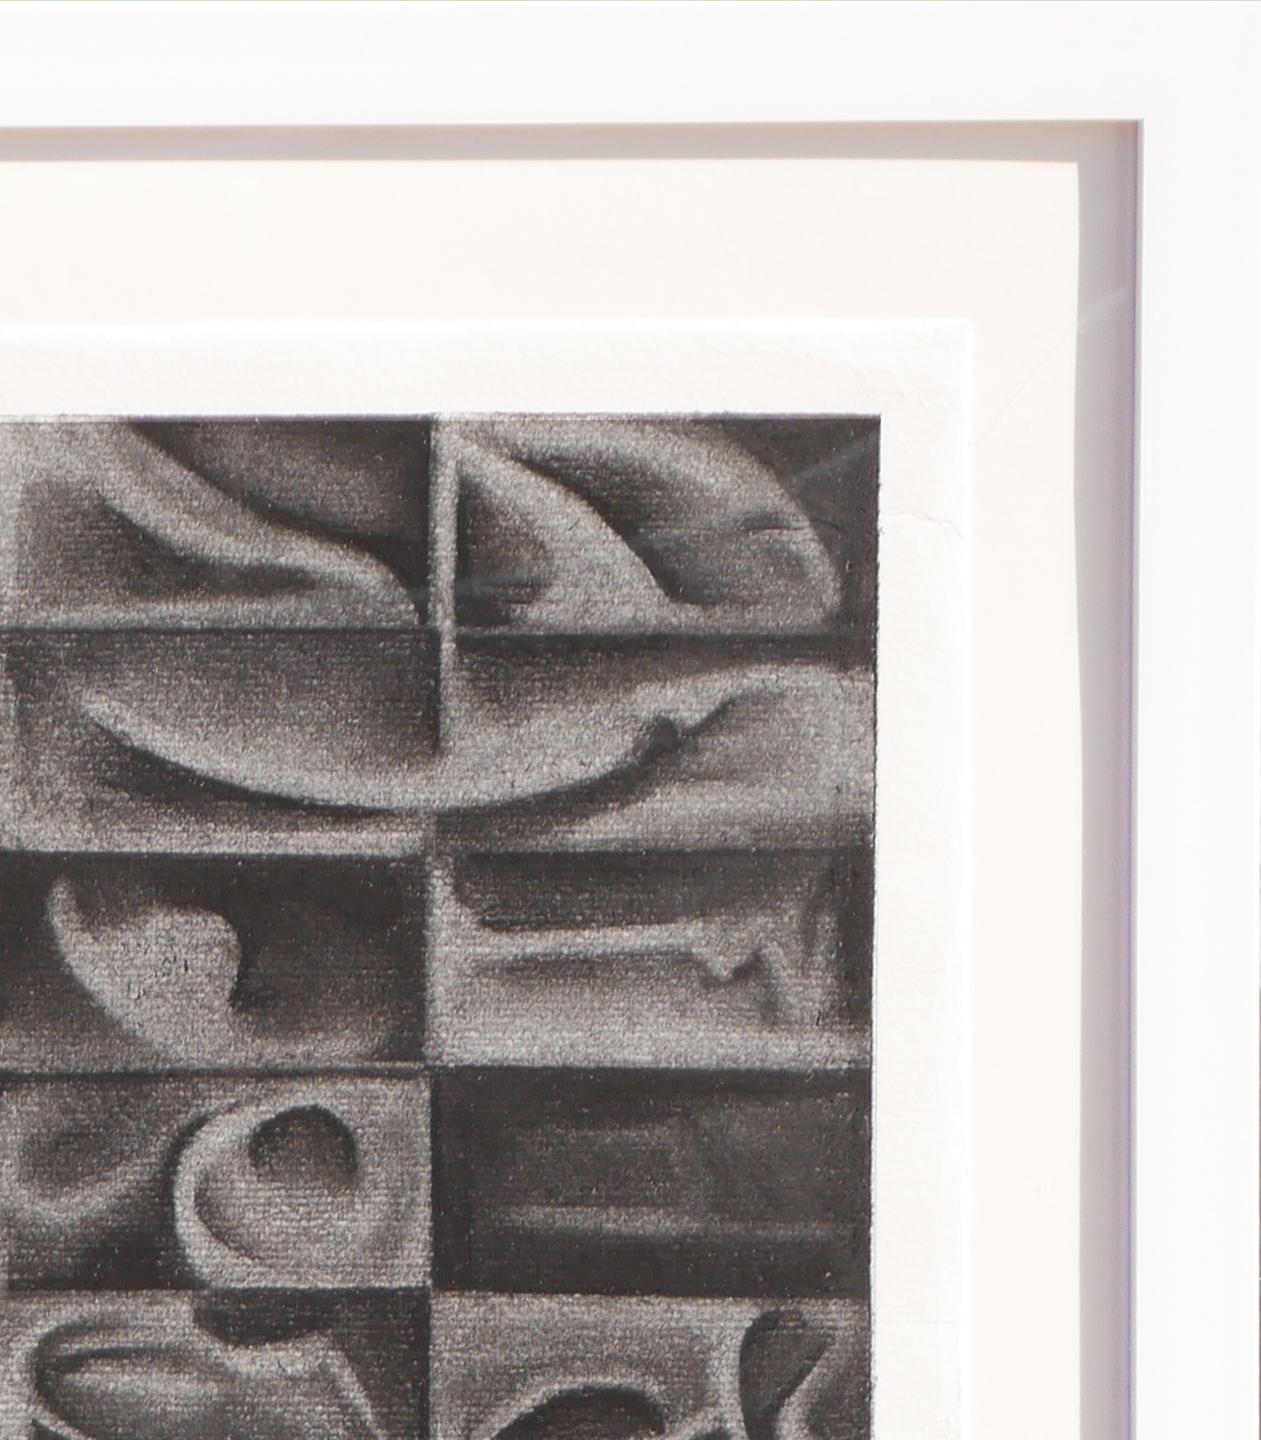 Zeitgenössische schwarz-weiße geometrische Kohlezeichnung des Künstlers James McCahon. Diese Zeichnung zeigt eine ausgewogene Komposition aus rechteckigen Formen mit abgerundeten Kreisen und Linien. Signiert und datiert in der rechten unteren Ecke.